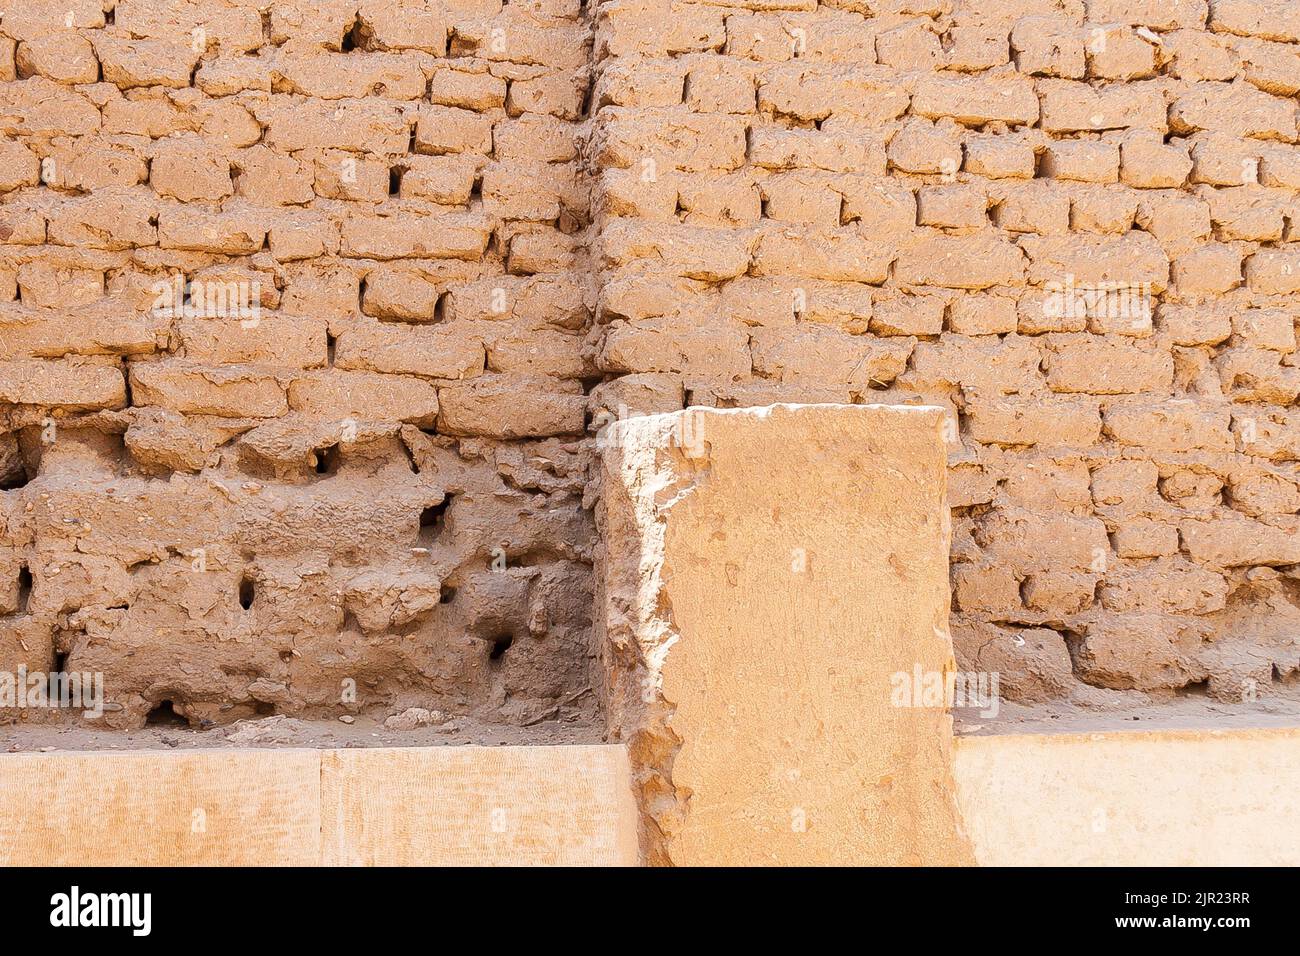 Ägypten, Saqqara, Grab von Horemheb, Südwand des zweiten Gerichts, bleibt von einer früheren Phase Wand, in der letzten Phase des Baus demontiert. Stockfoto